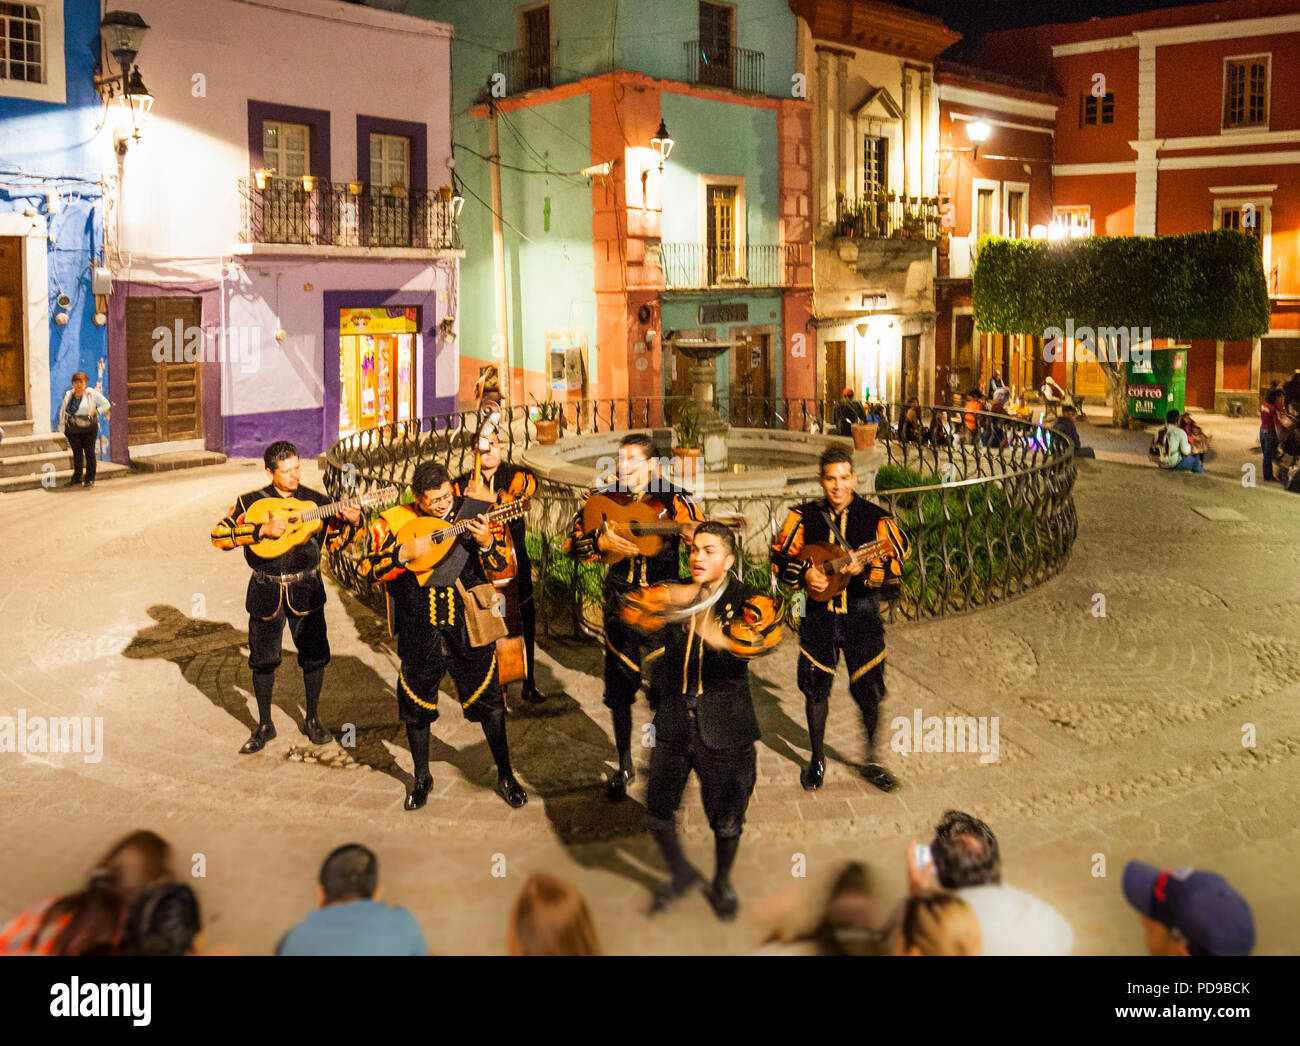 Troubadours de divertir une foule de touristes à Guanajuato, au Mexique. Banque D'Images